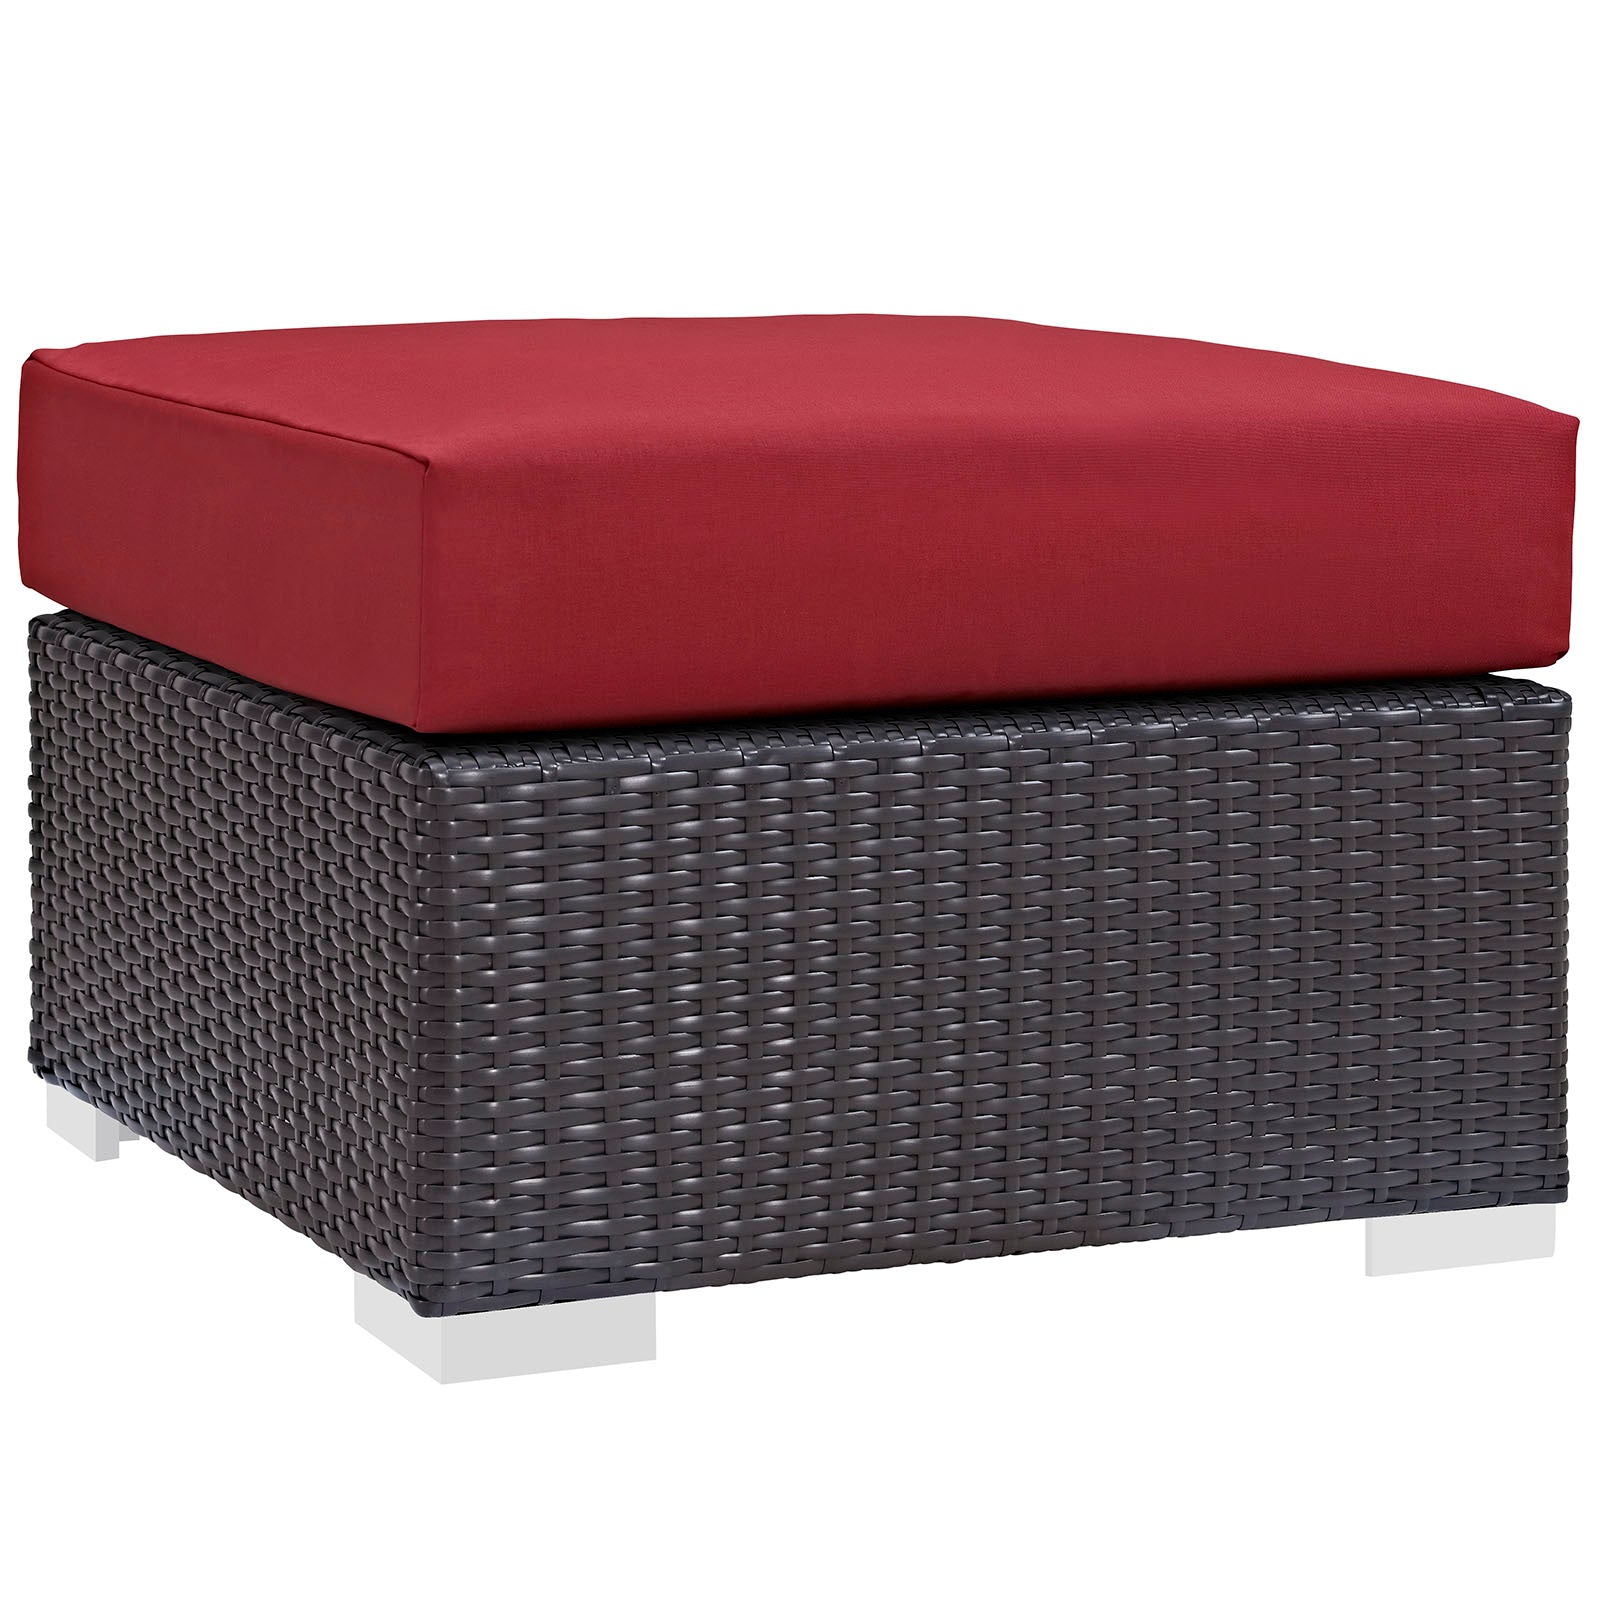 Modway Outdoor Conversation Sets - Convene 3 Piece Outdoor Patio Sofa Set Espresso in Red